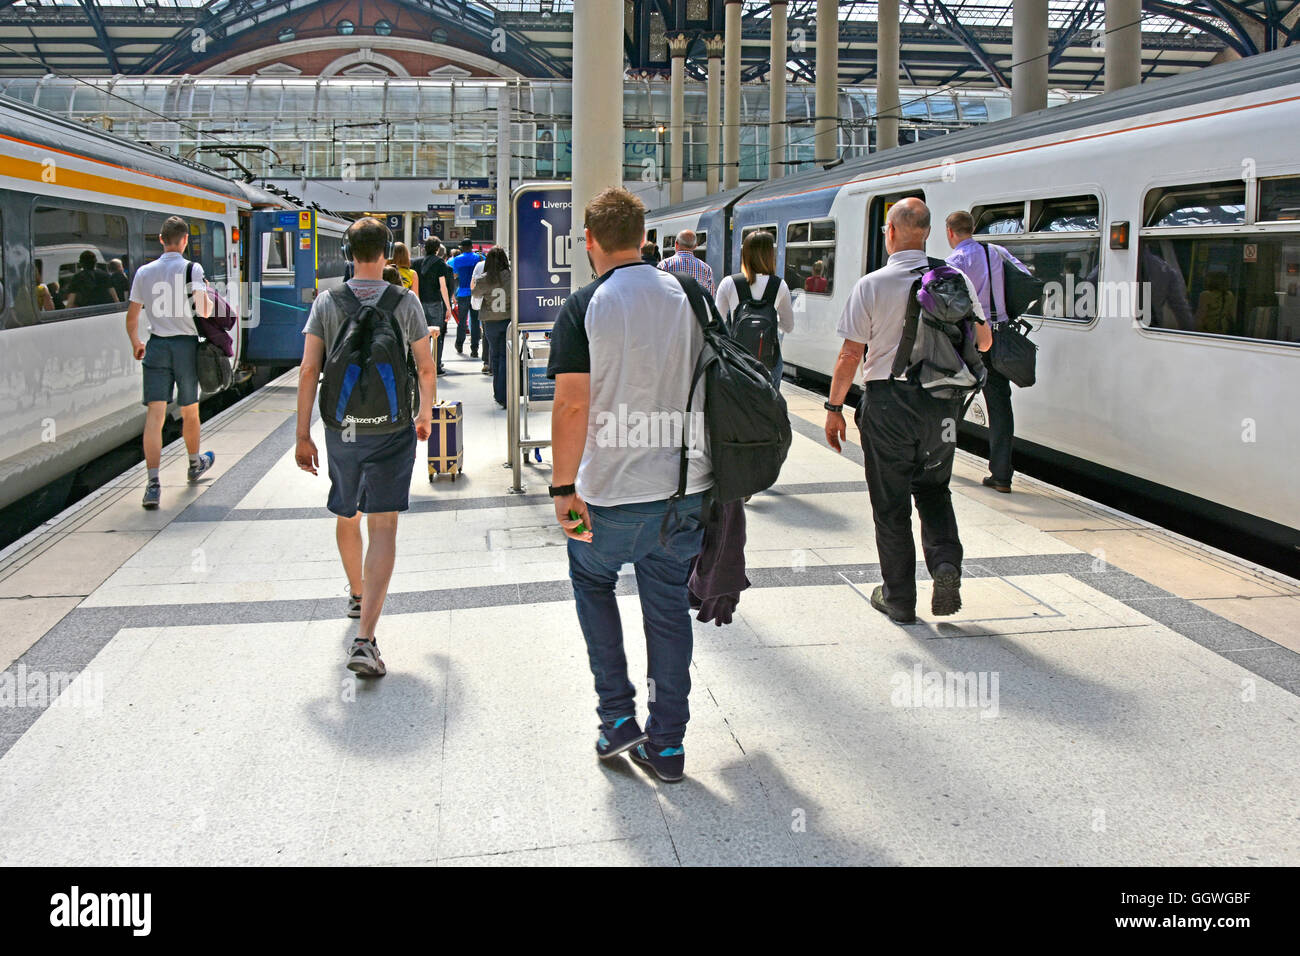 Männliche Zugpassagiere mit öffentlichen Verkehrsmitteln, Rückblick auf die Züge Abellio Greater Anglia, die am Bahnhofsplatz Liverpool Street UK der City of London ankommen Stockfoto